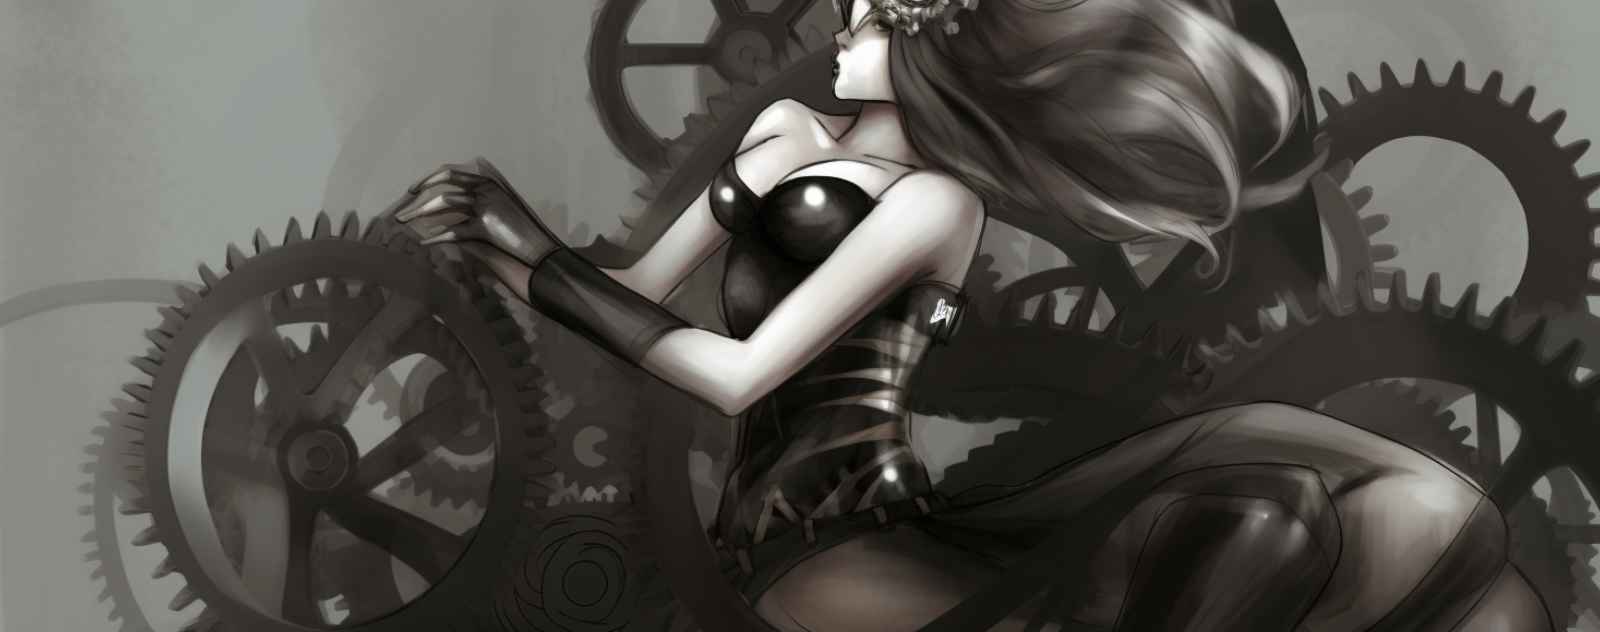 art steampunk girl